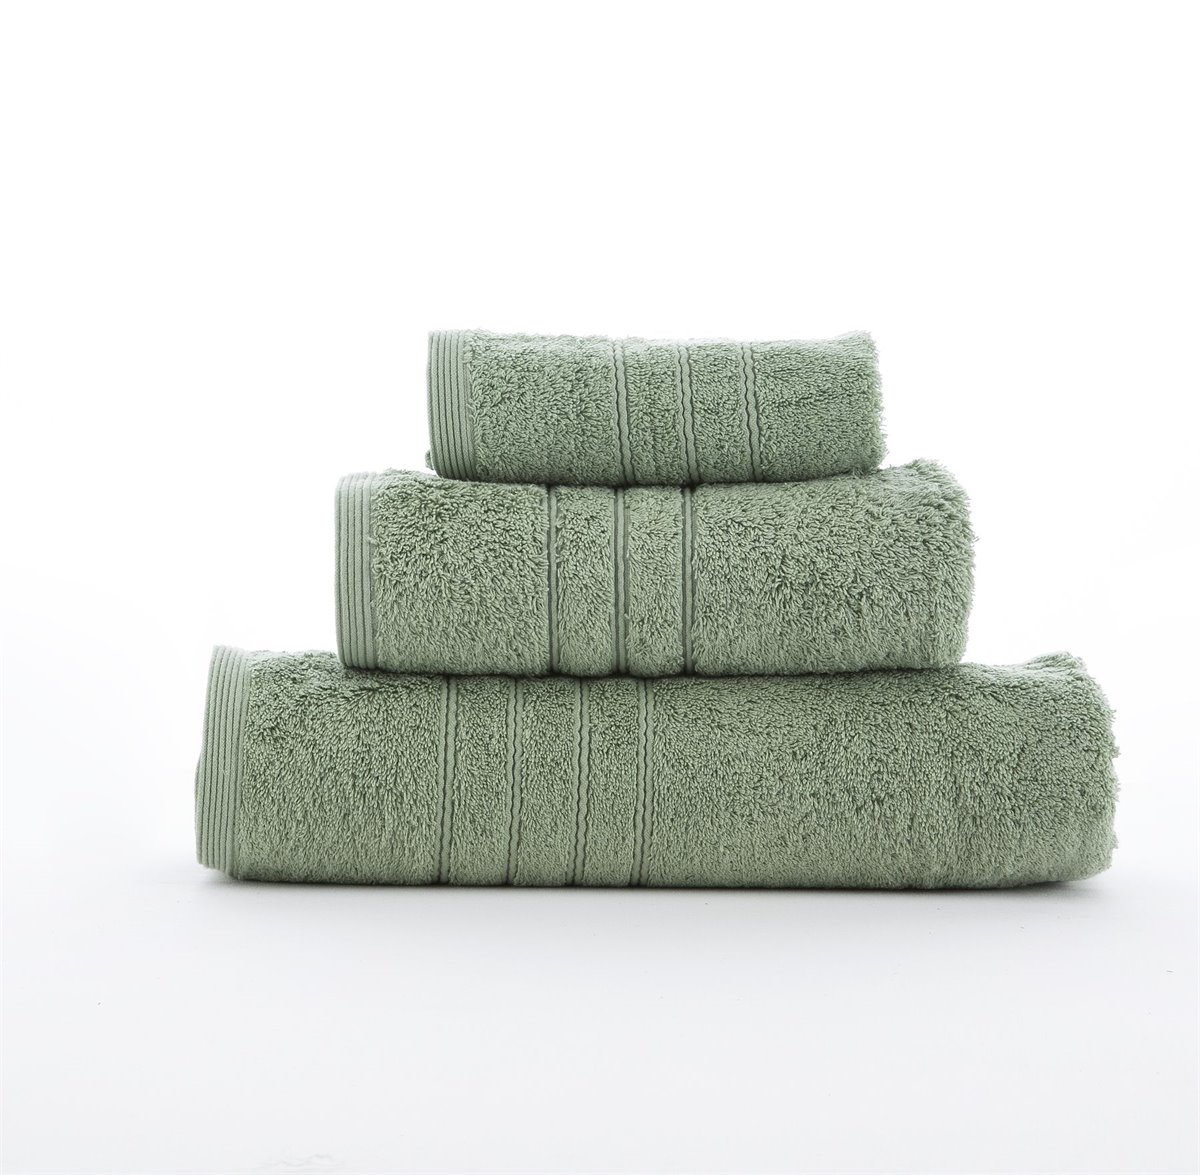 Juego 3 toallas algodón 700 gr/m2 Mandarina - Conforama